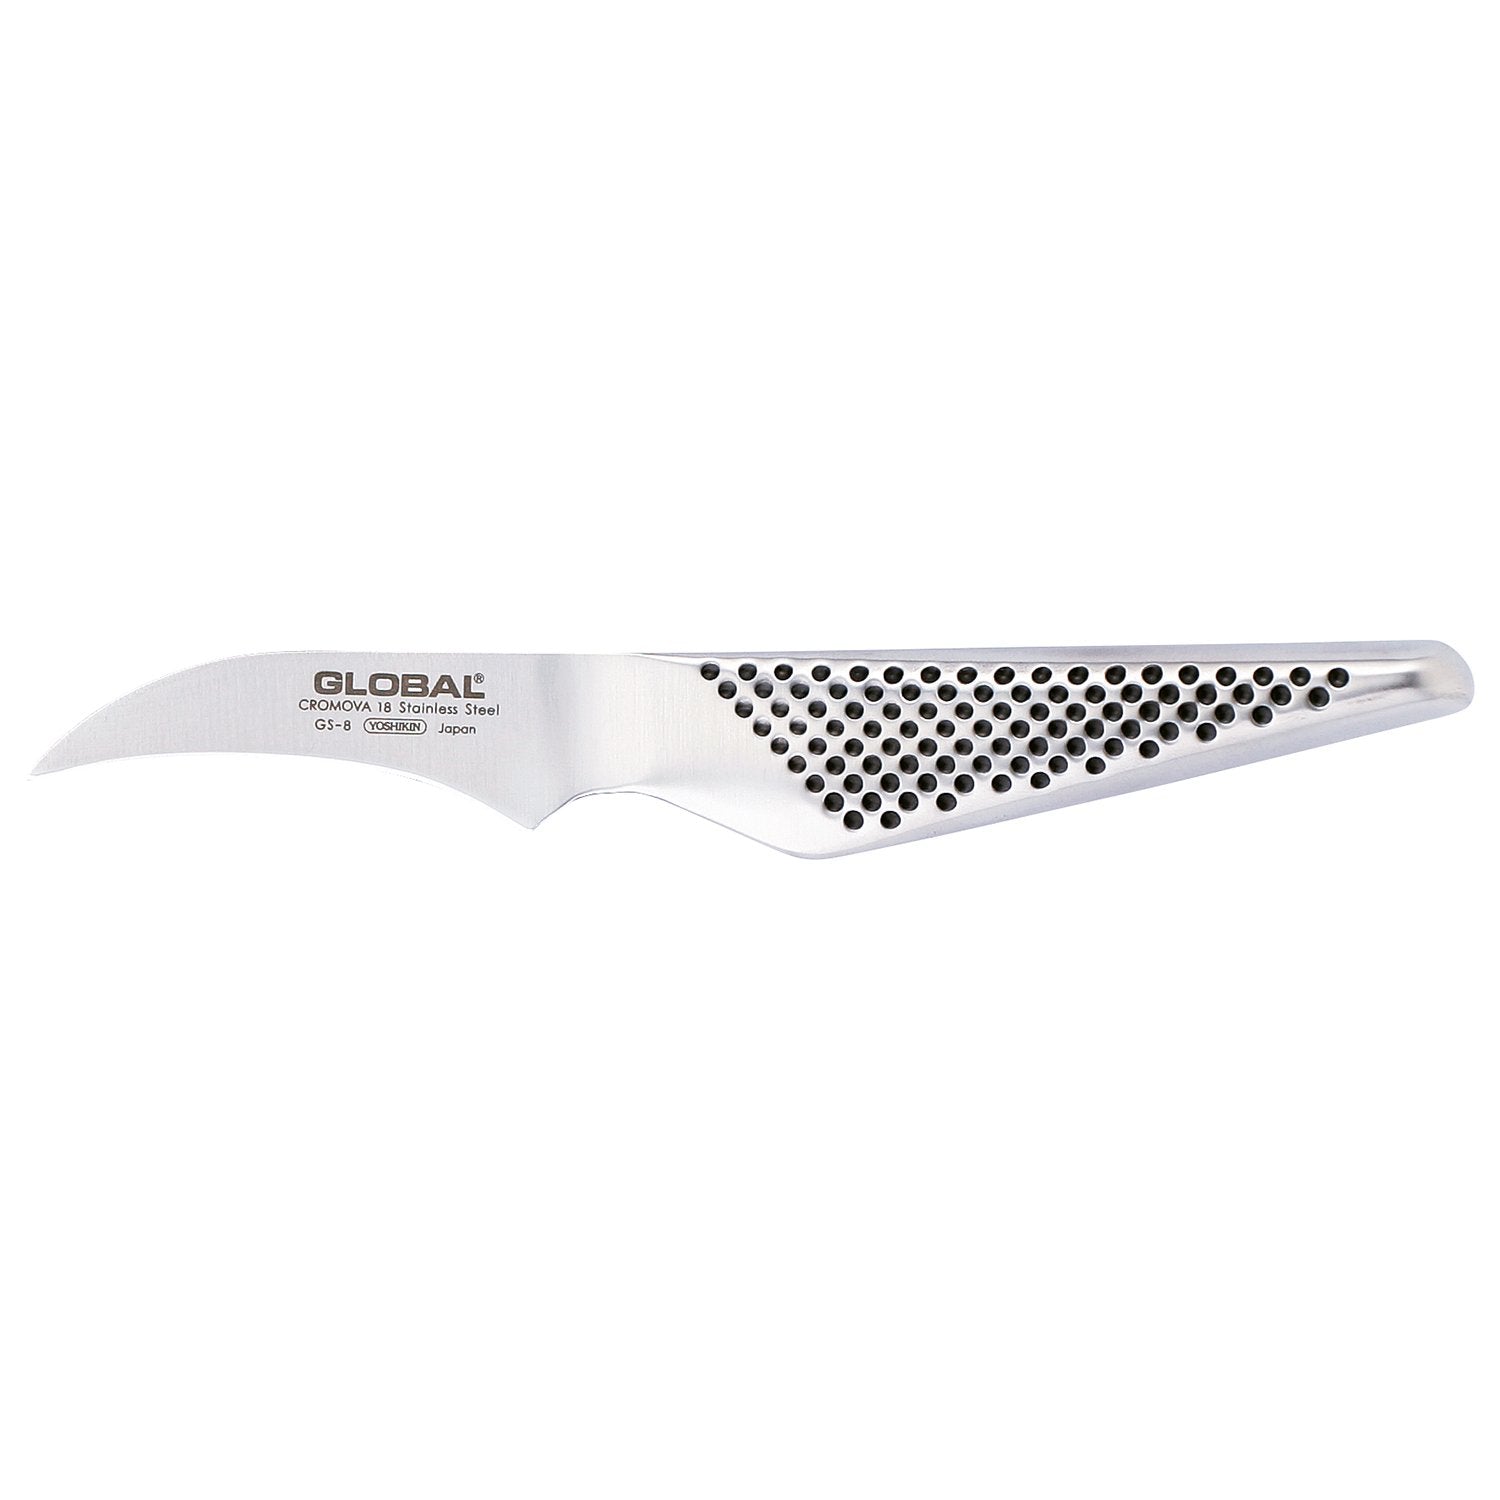 Global GS 8 Knife de paring, 7 cm